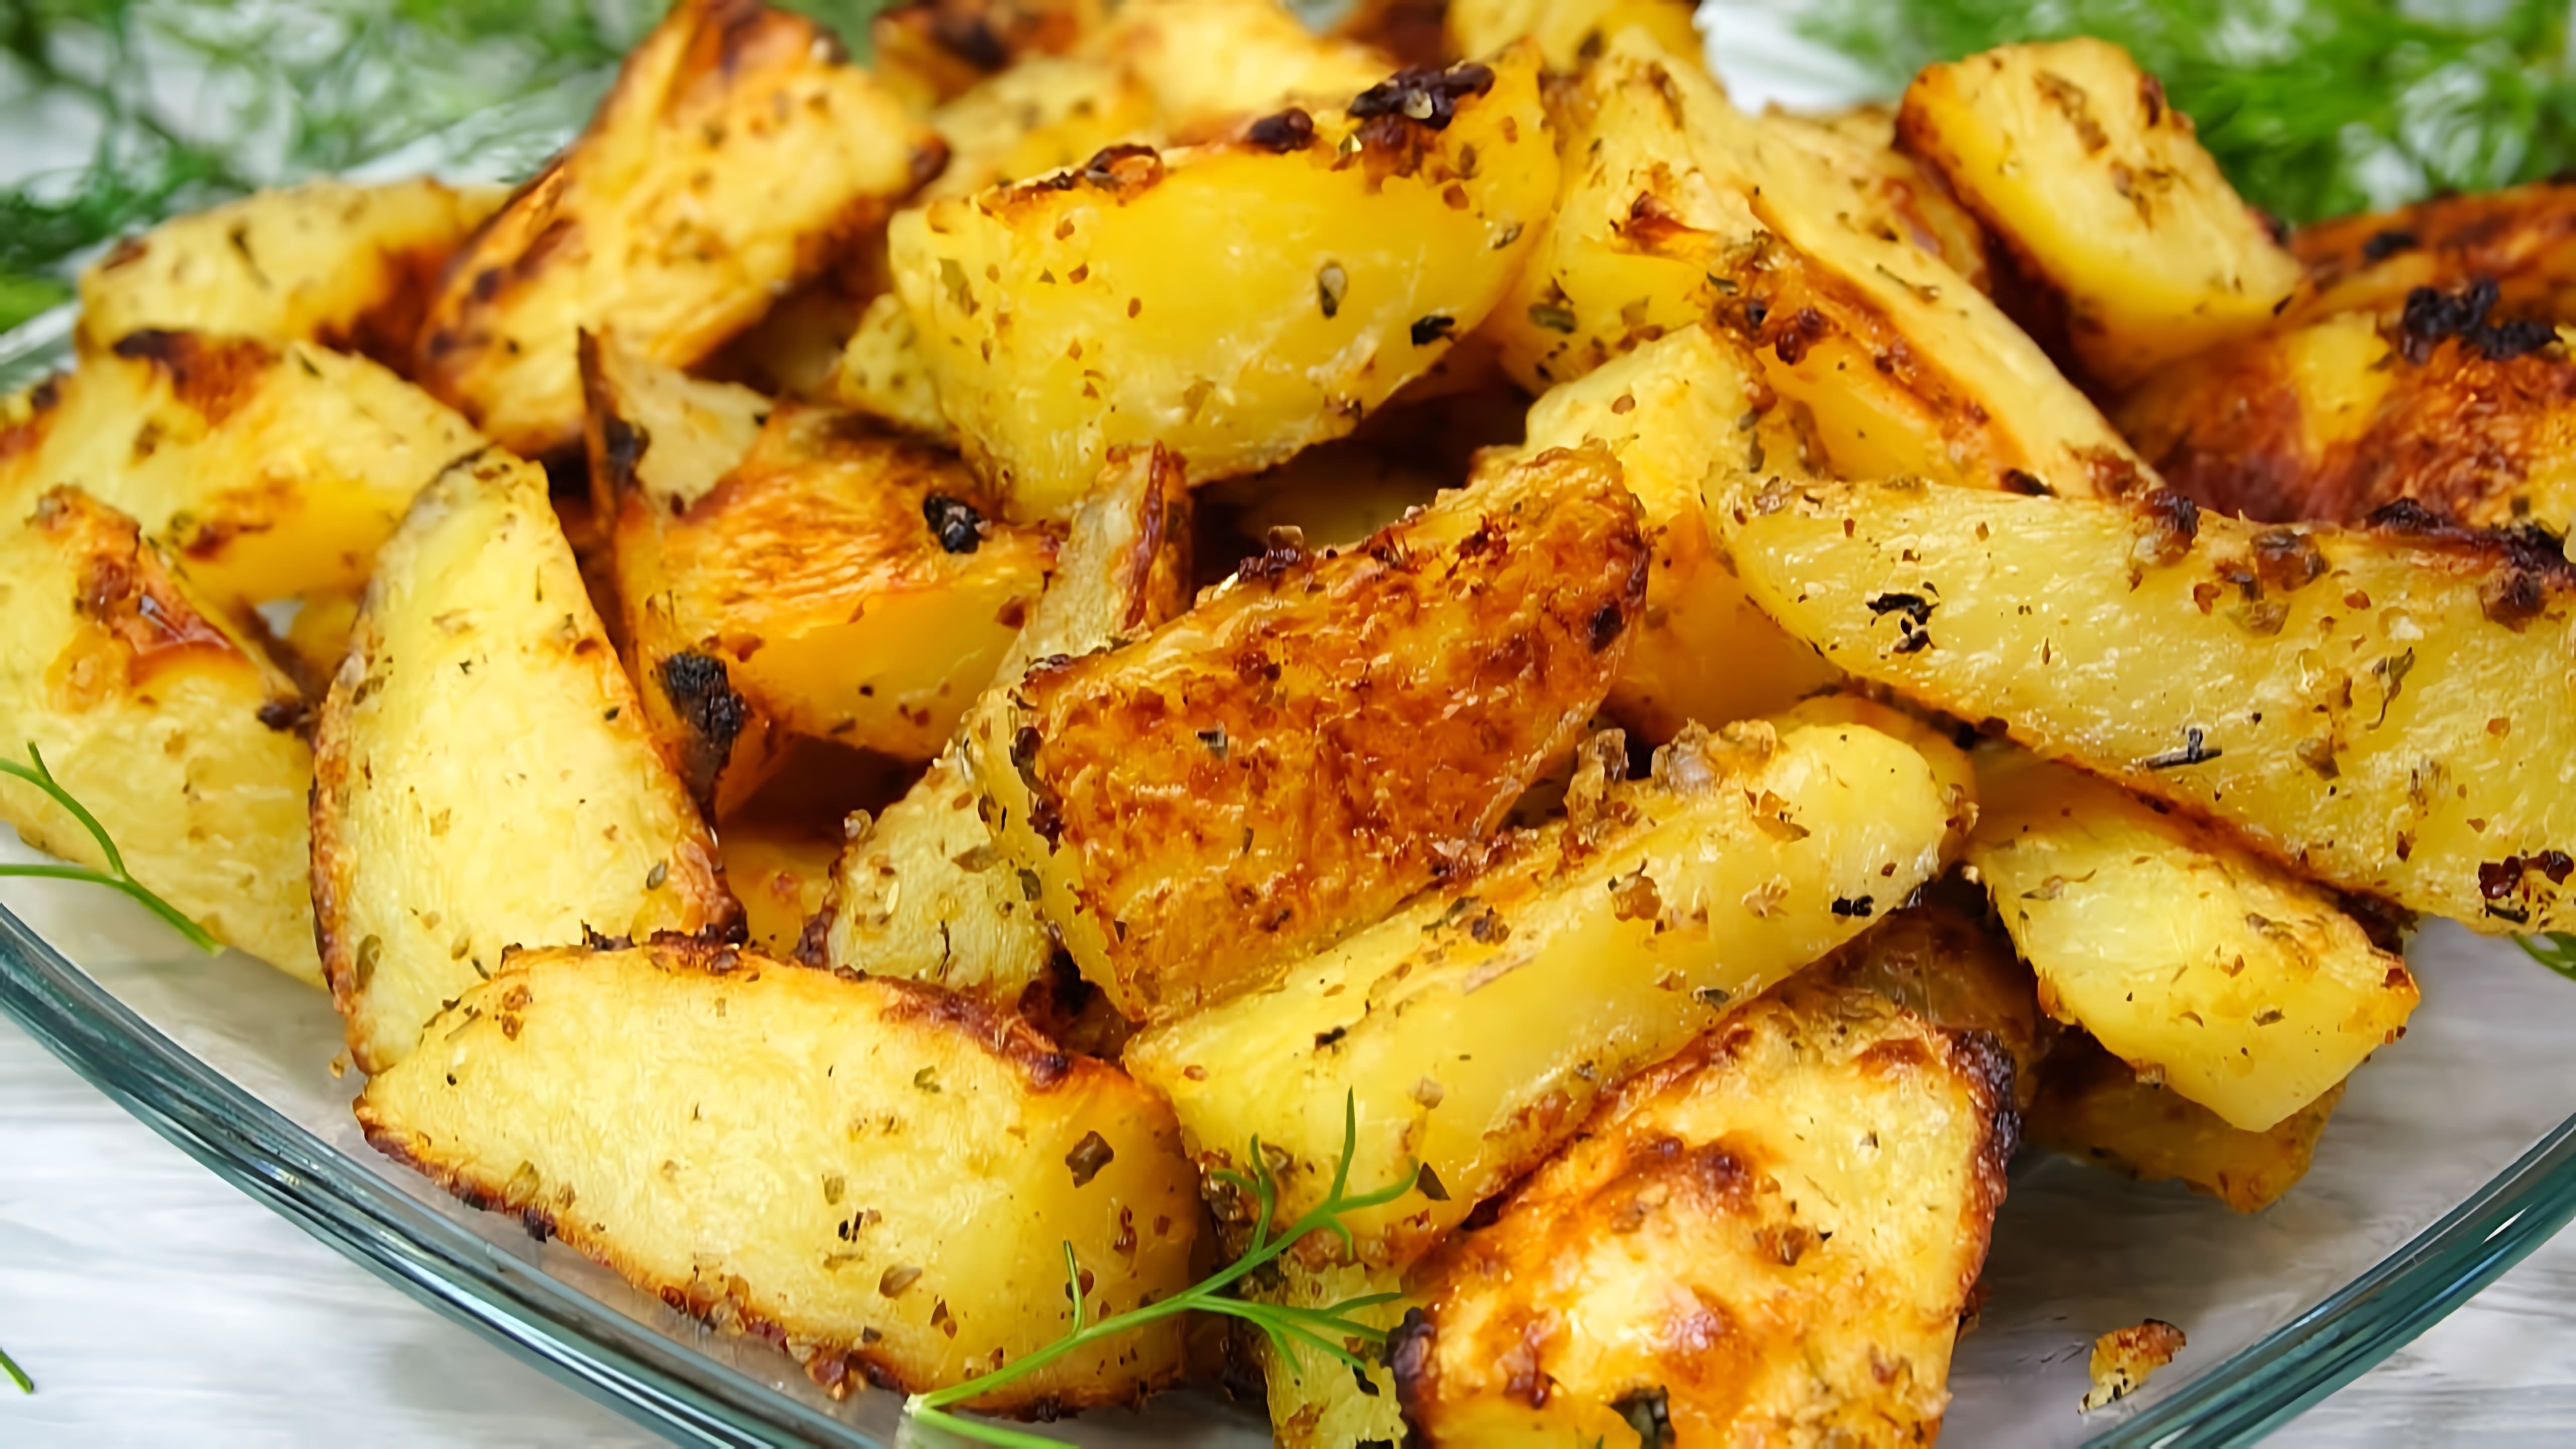 В этом видео демонстрируется рецепт приготовления золотистого картофеля в горчичном соусе